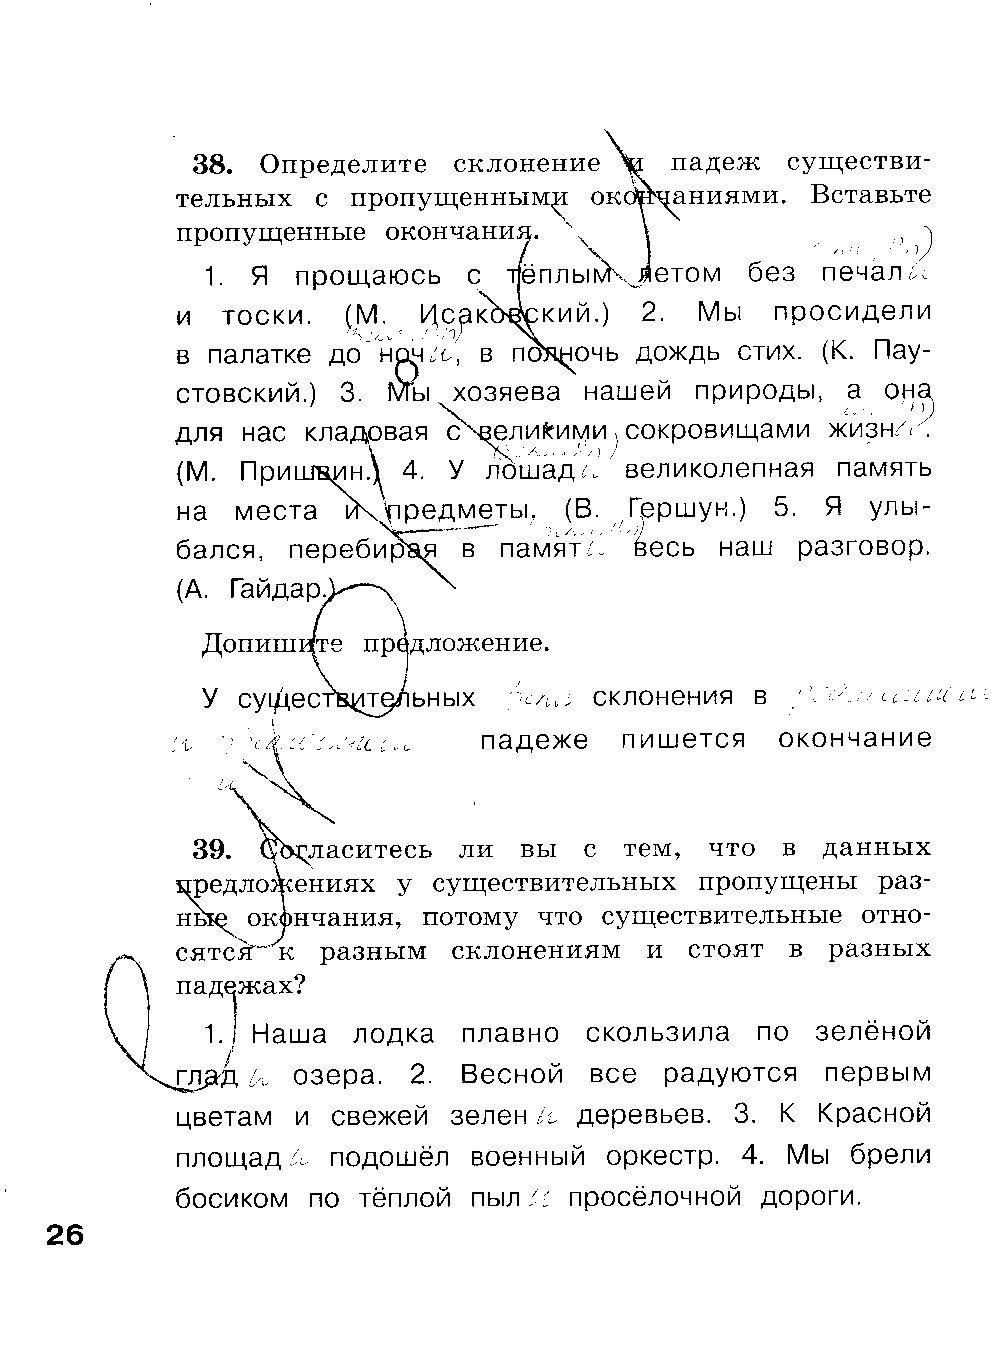 ГДЗ Русский язык 4 класс - стр. 26